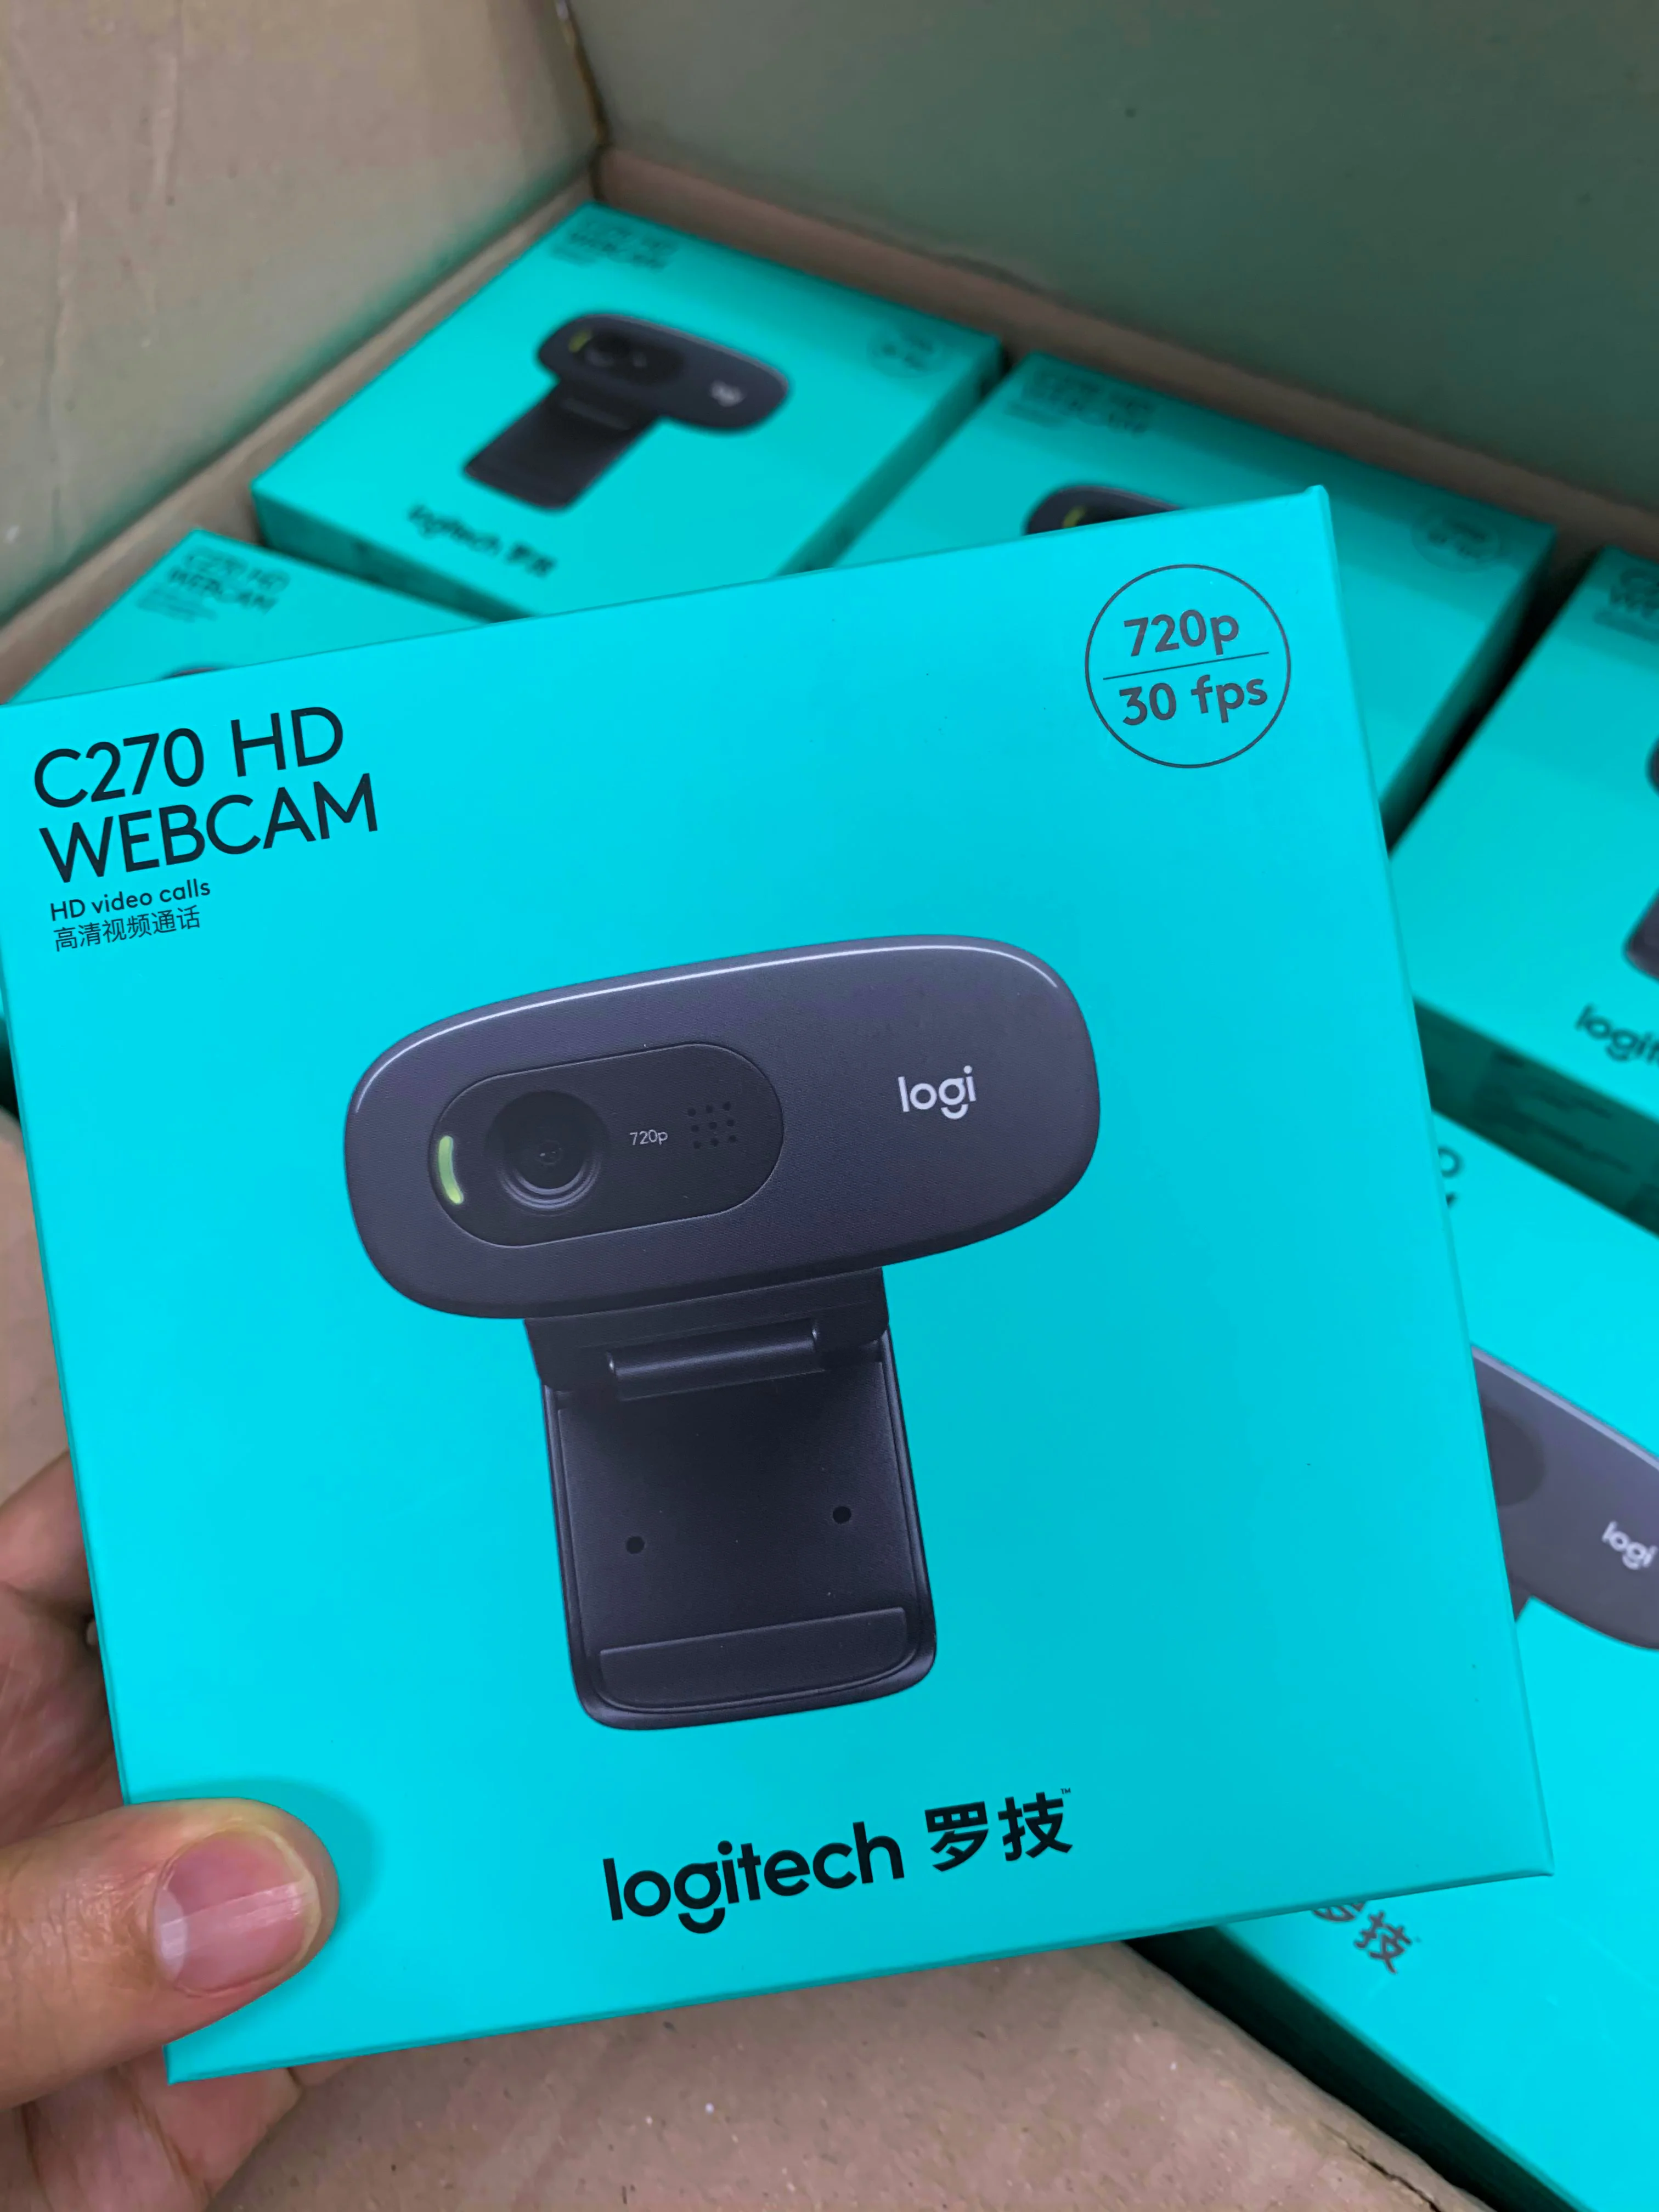 webcam c930e